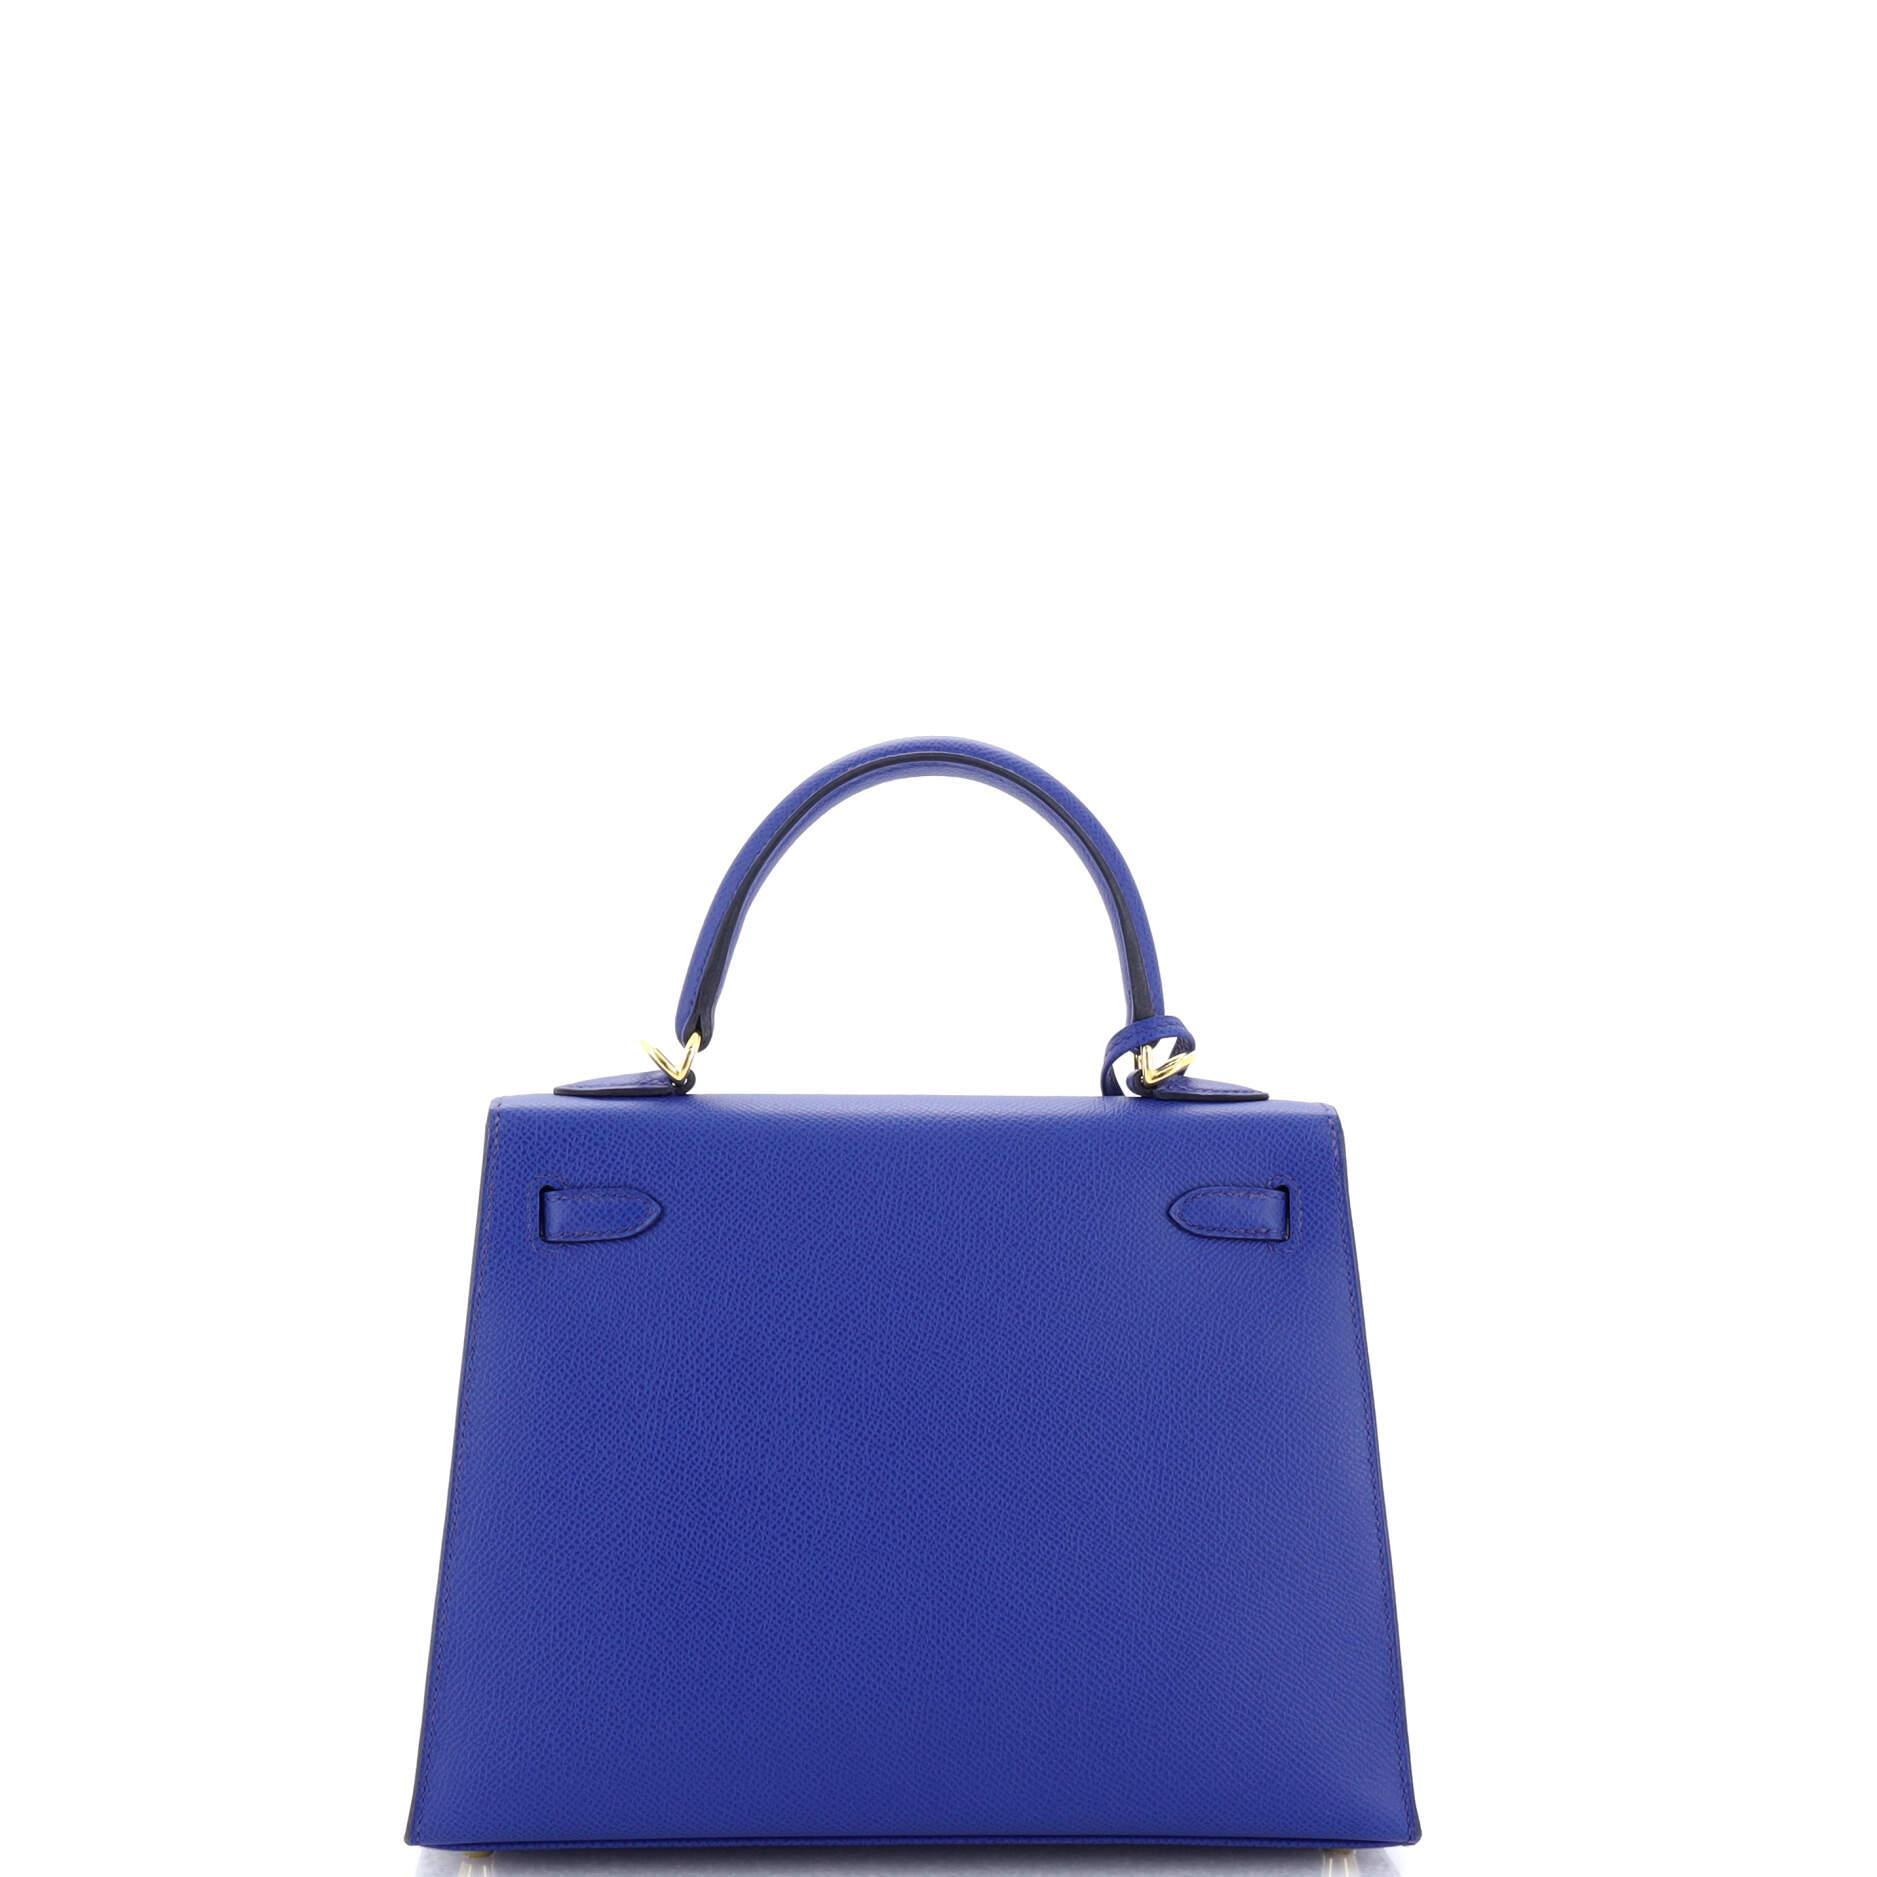 Women's Hermes Kelly Handbag Bleu Royal Epsom with Gold Hardware 25